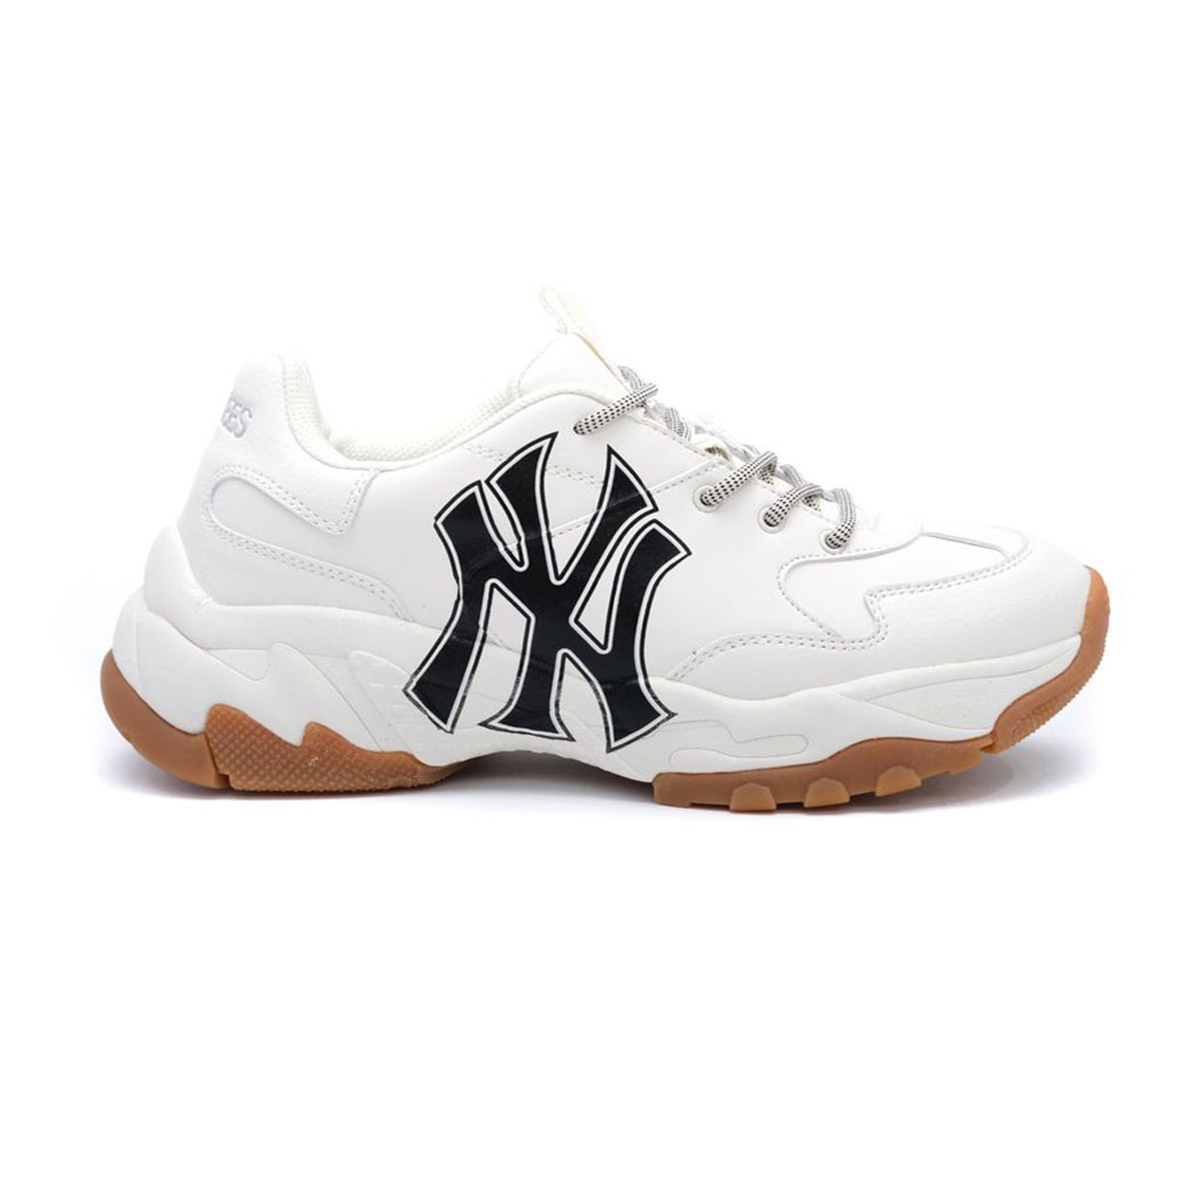 Giày MLB NY trắng chữ đen đế nâu Like Auth